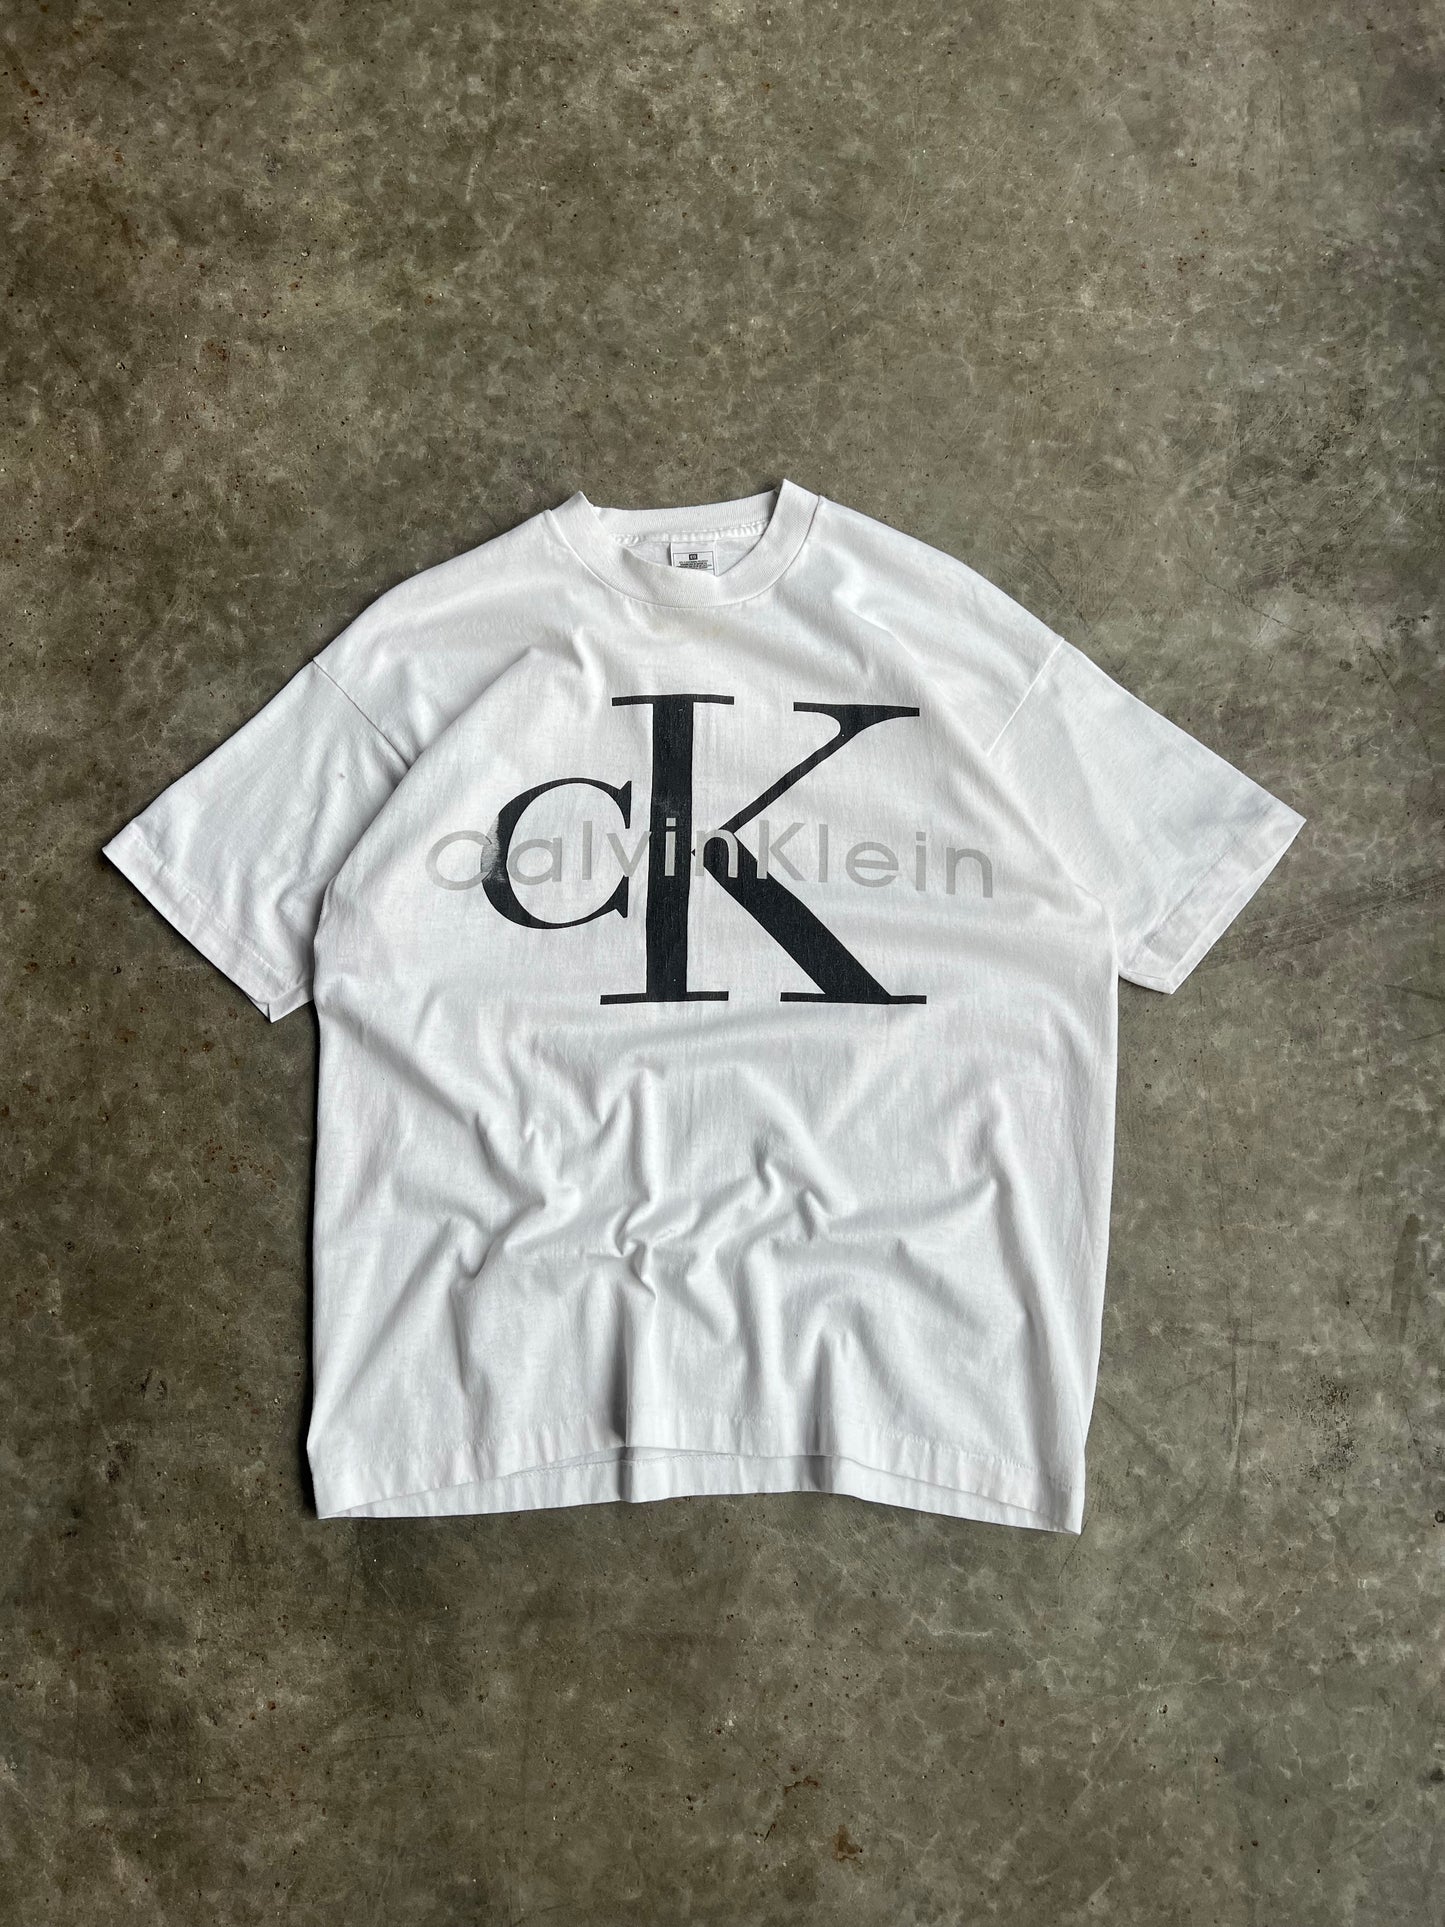 Vintage Calvin Klein Shirt - XL